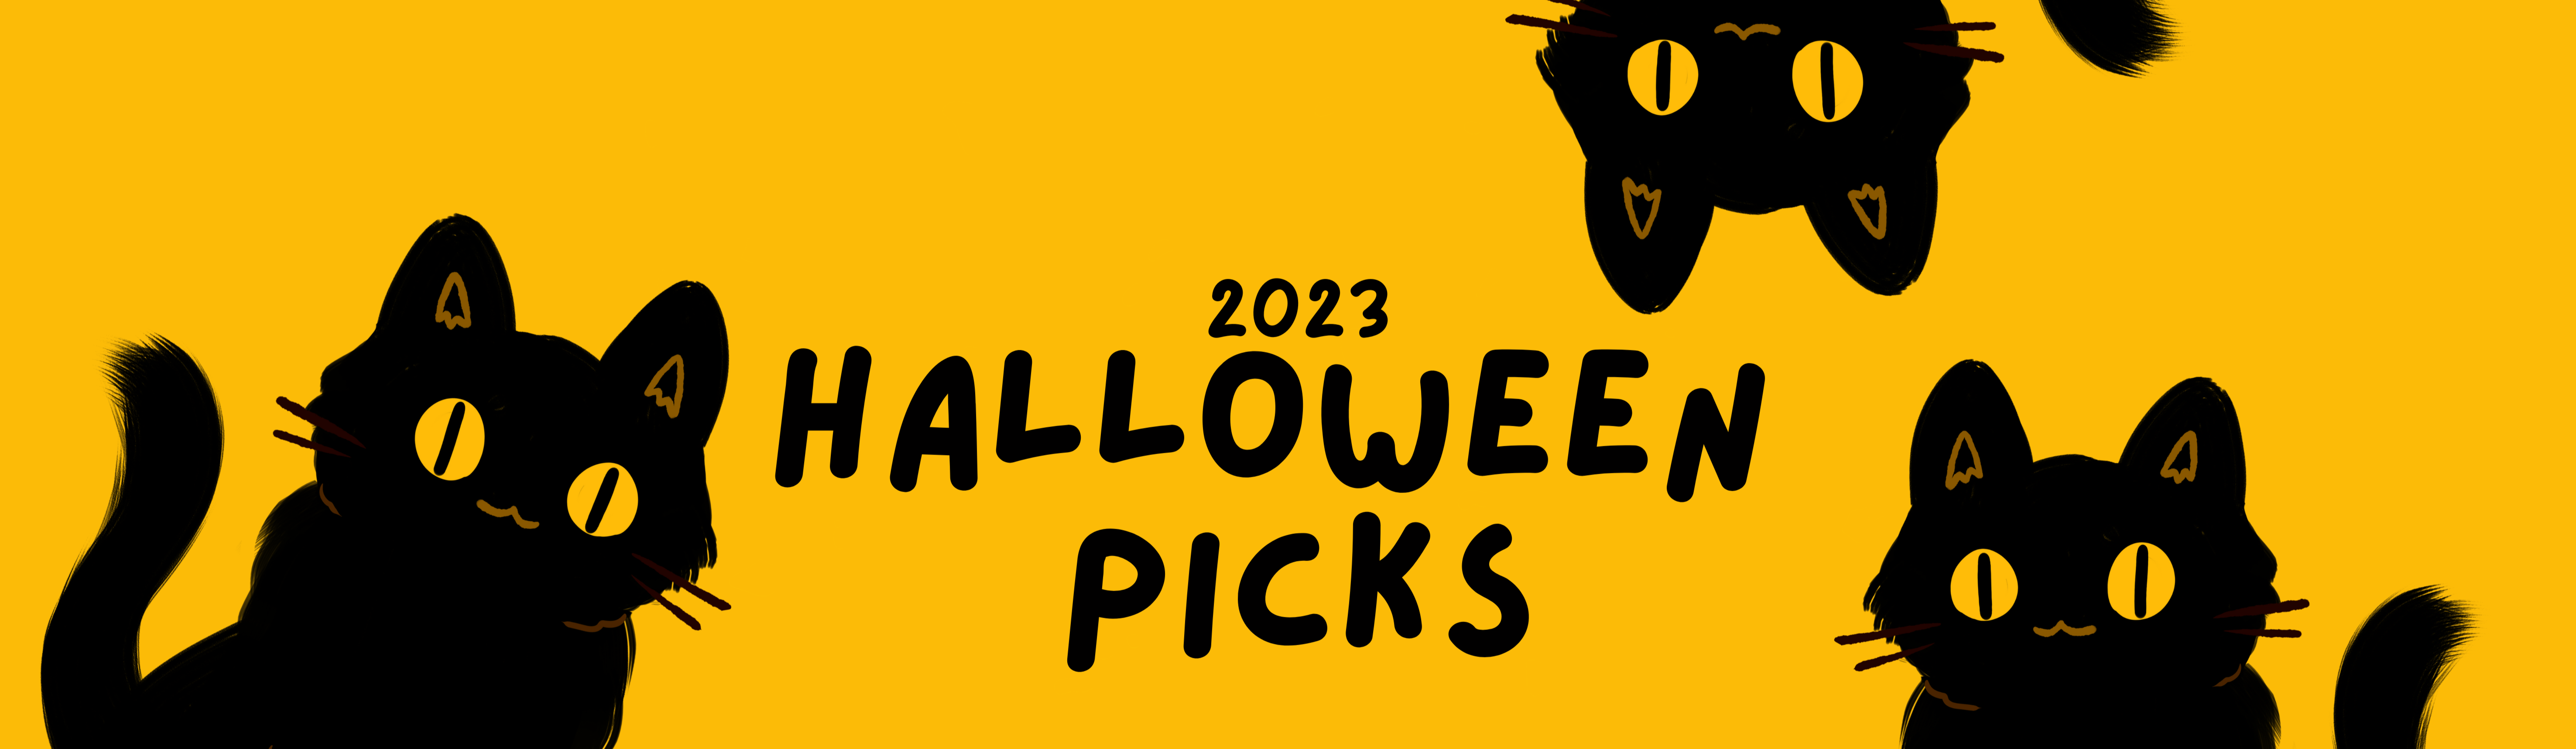 Halloween Picks 2023